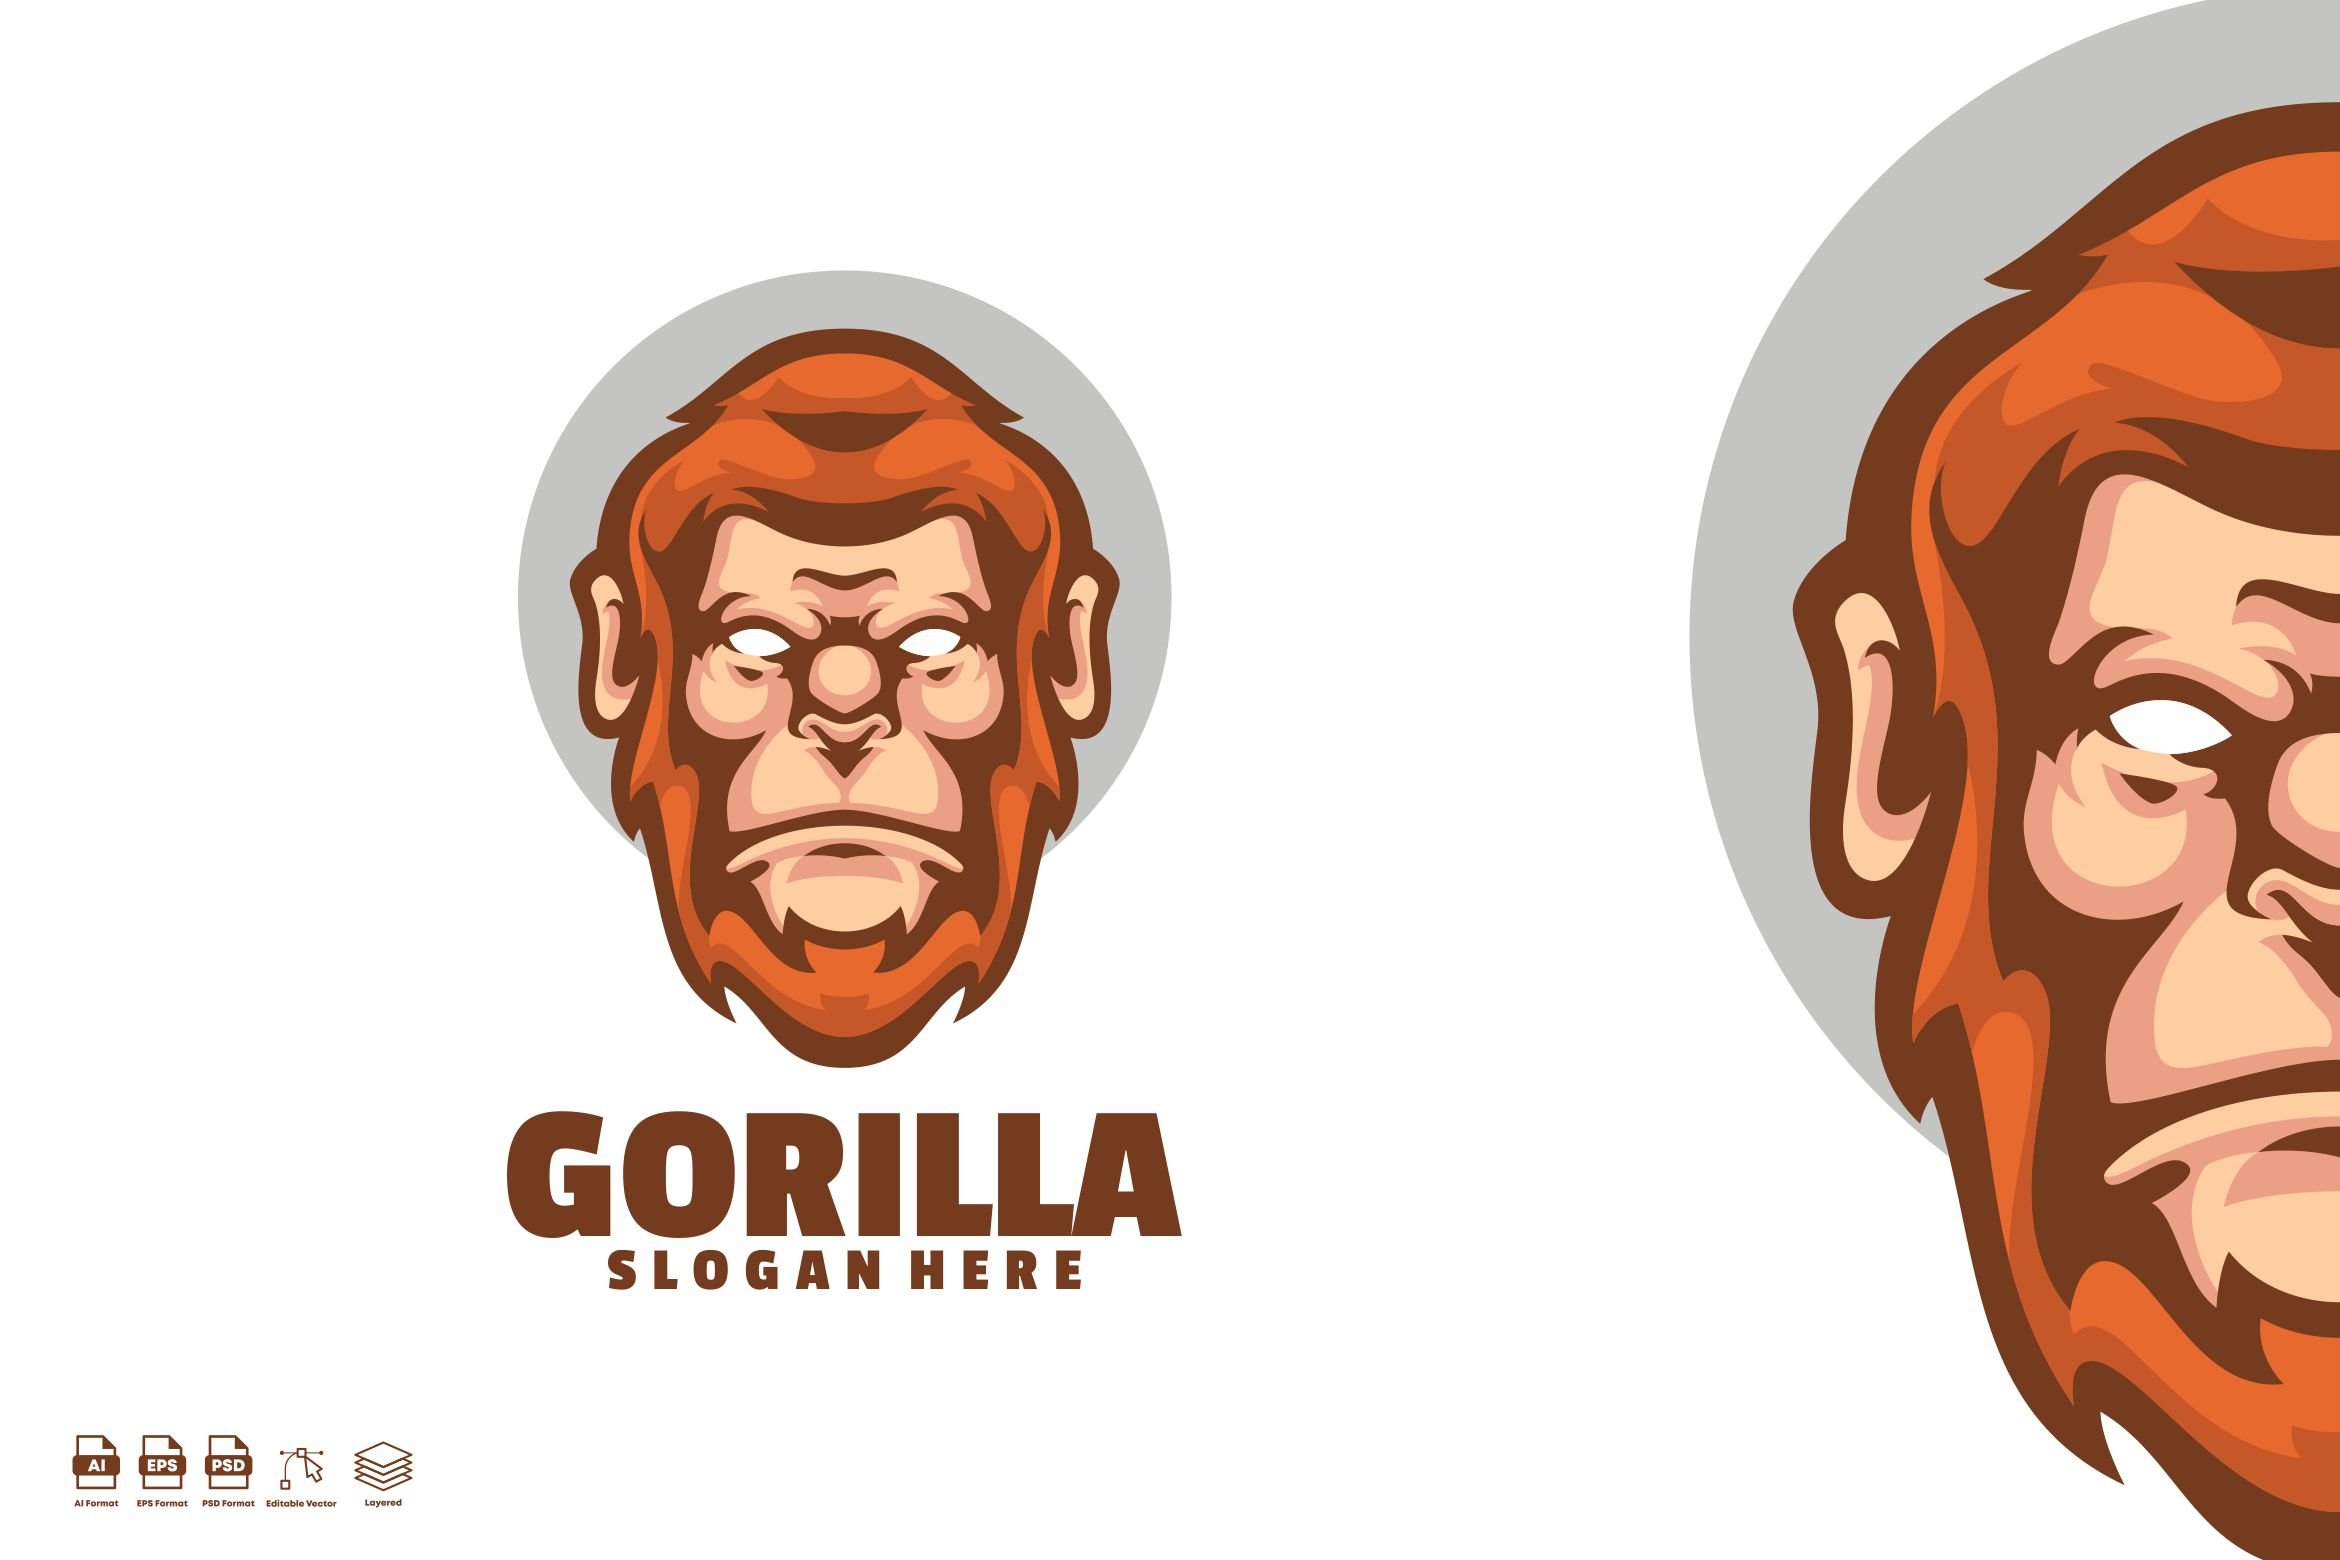 Gorilla Mascot Logo Designs cover image.